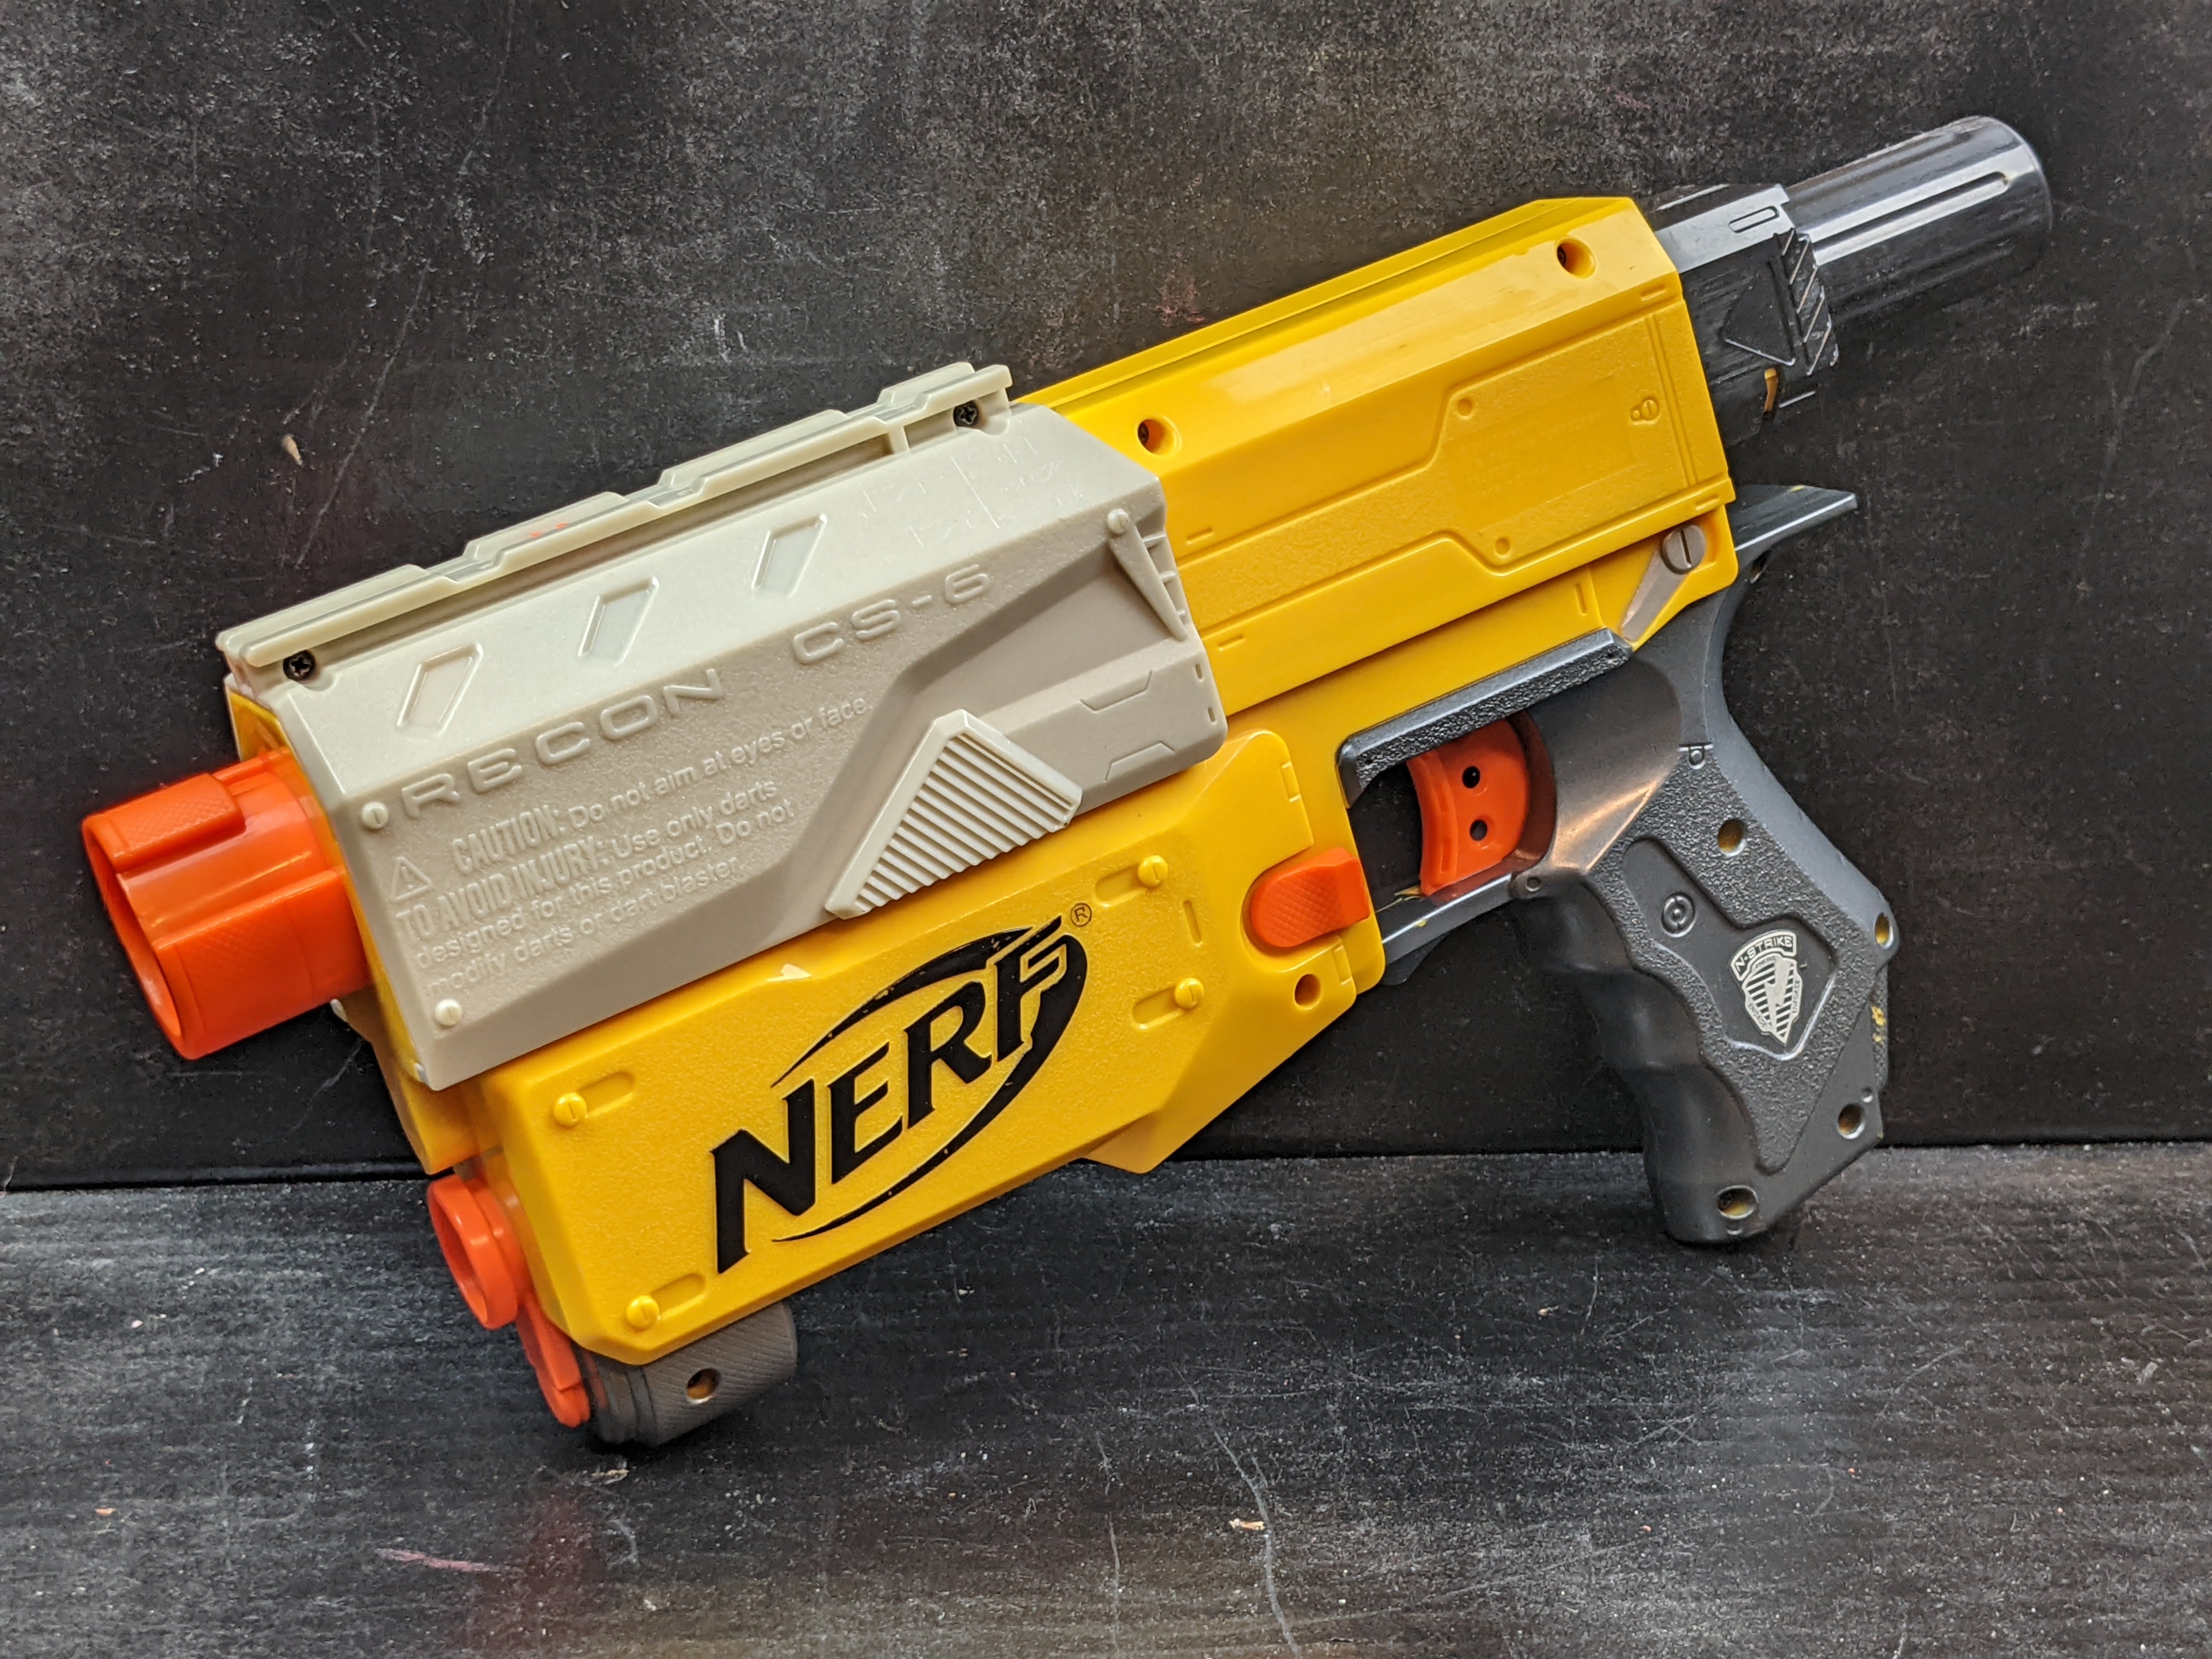 Nerf Recon CS-6 – Blaster